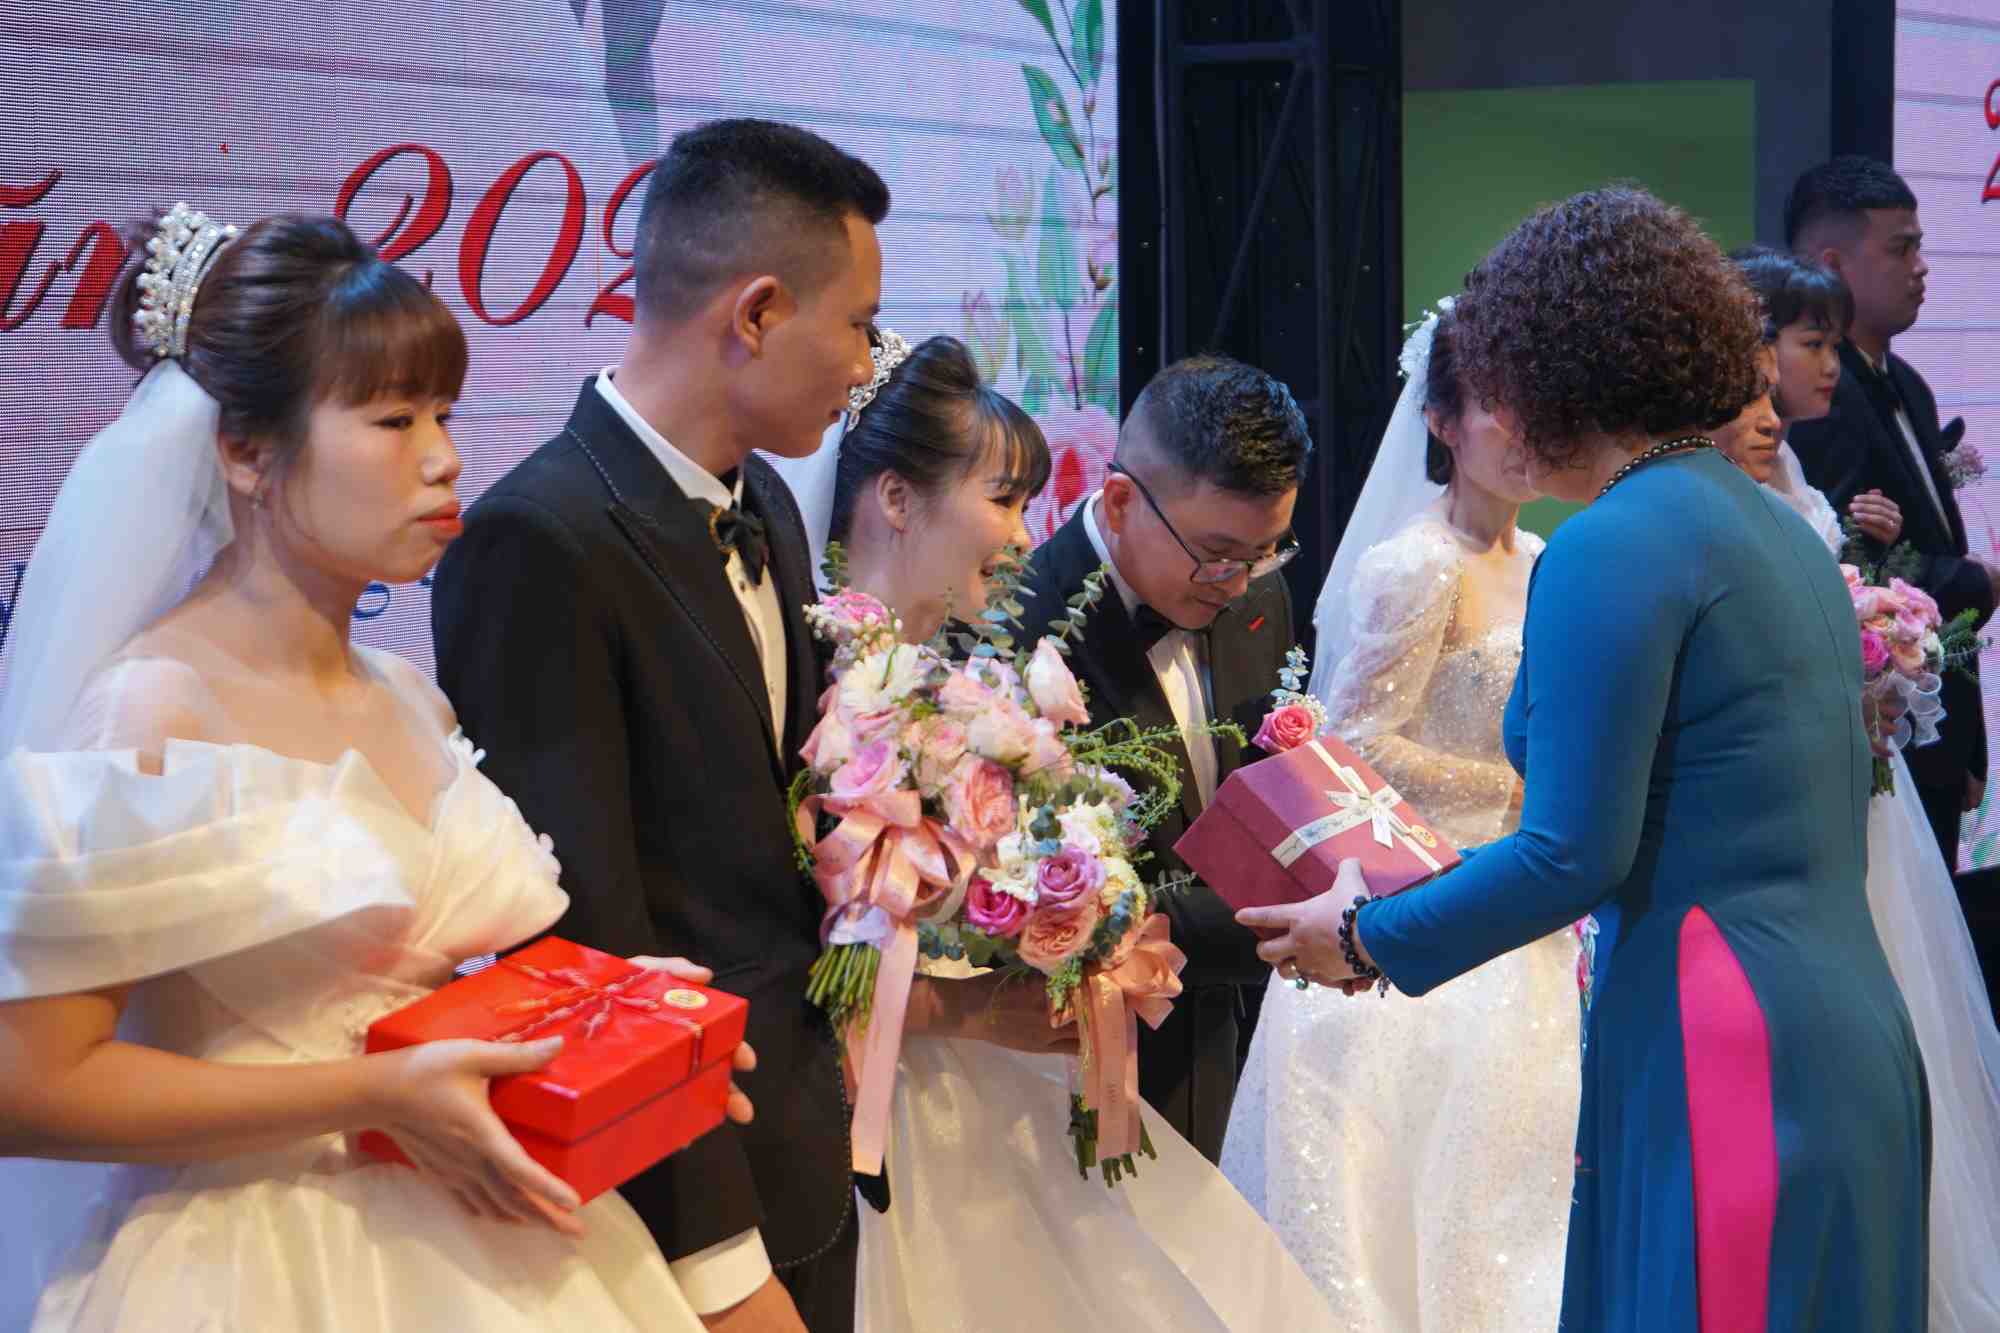 Tại lễ cưới, các cặp đôi đón nhận những phần quà ý nghĩa từ các cấp công đoàn tỉnh và các nhà tài trợ. Trong đó, LĐLĐ tỉnh tặng các cặp đôi sổ tiết kiệm trị giá 7 triệu đồng. 